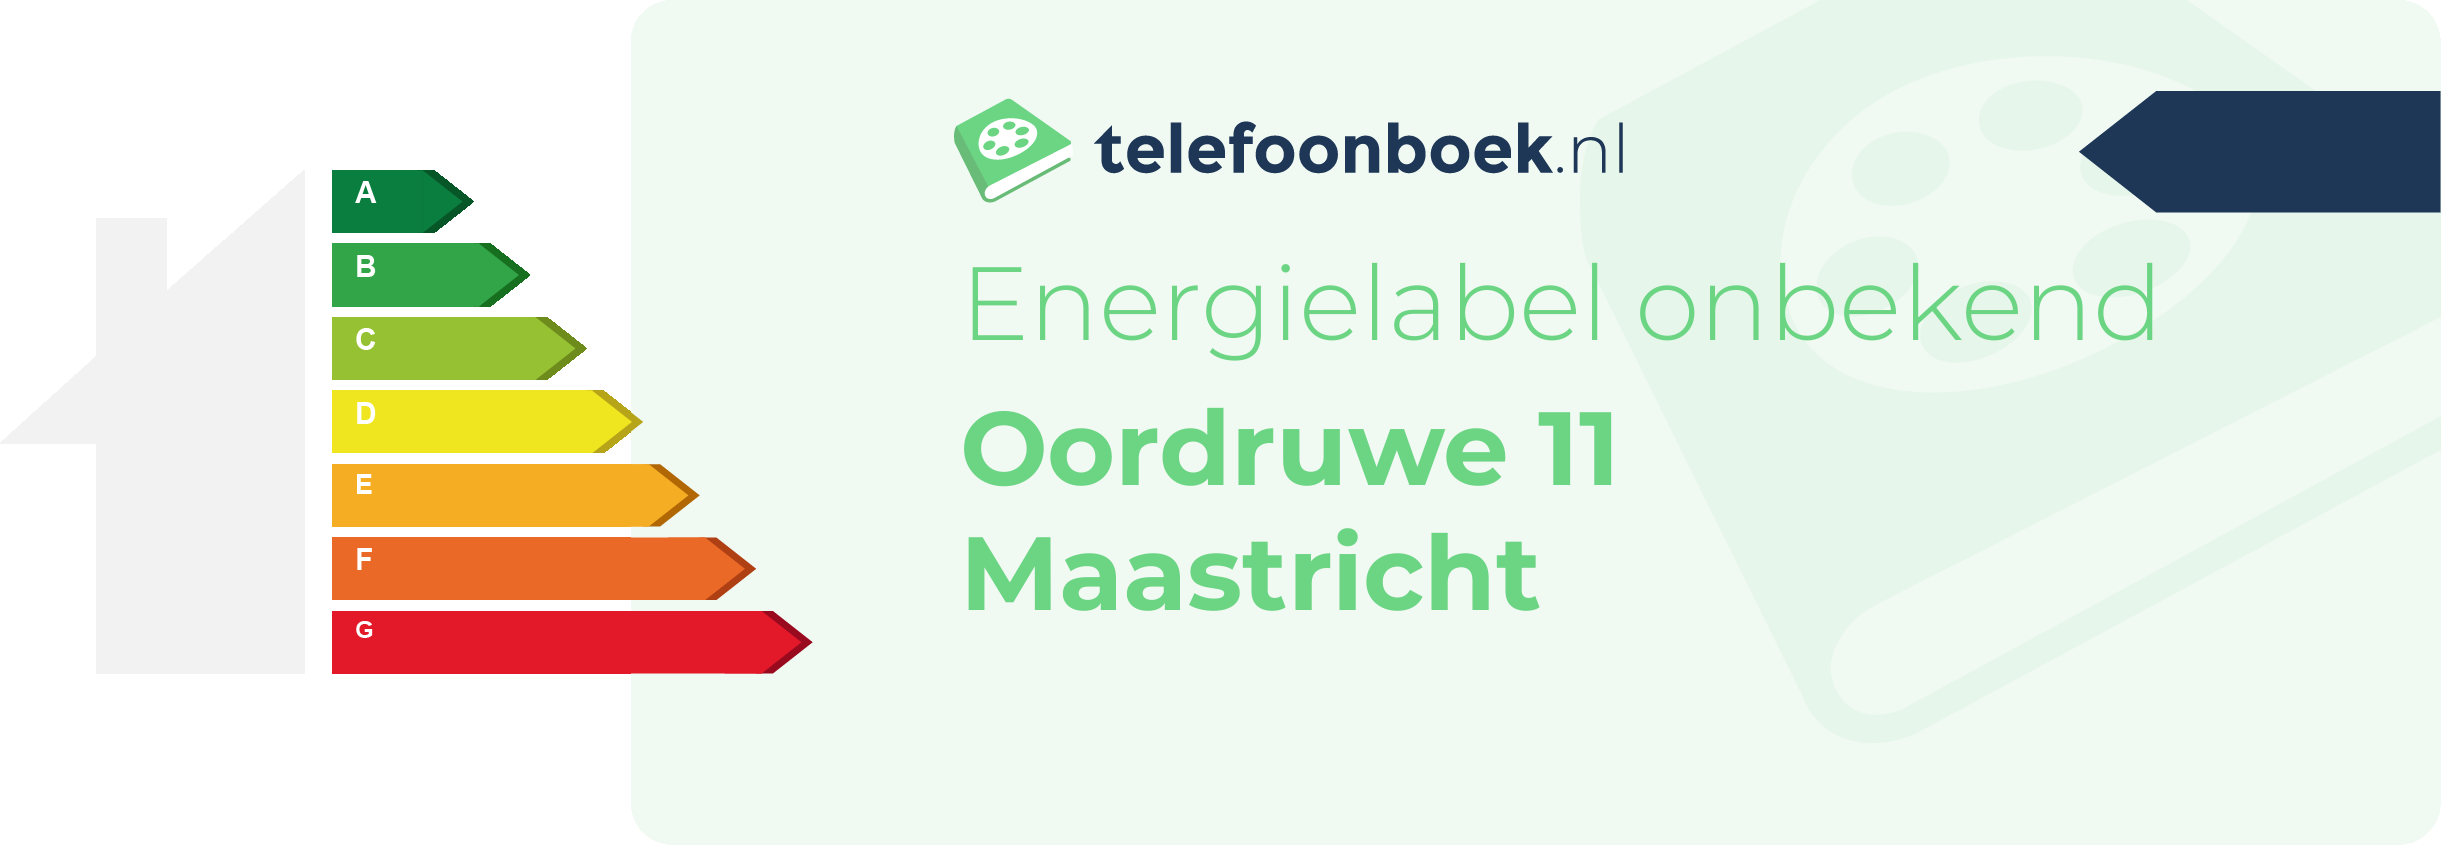 Energielabel Oordruwe 11 Maastricht